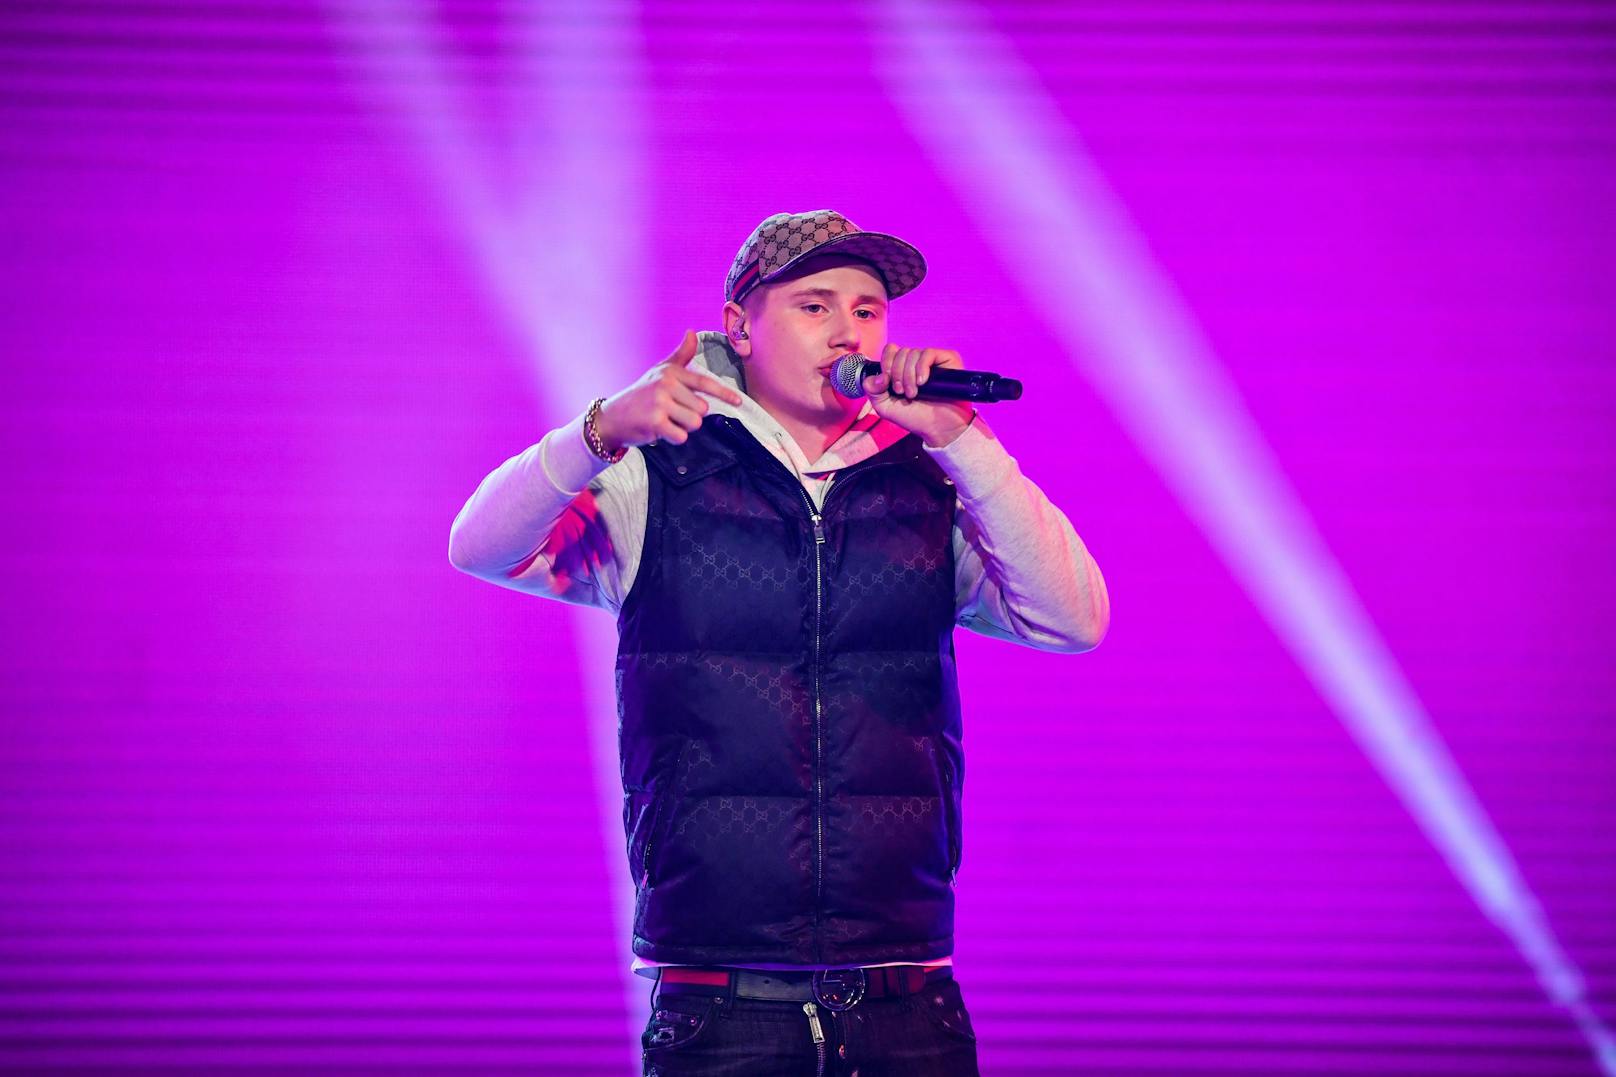 Der Rapper war in Schweden ein Star. 2019 war er der beliebteste Künstler auf Spotify. Vor Größen wie Ed Sheeran und Billie Eilish.